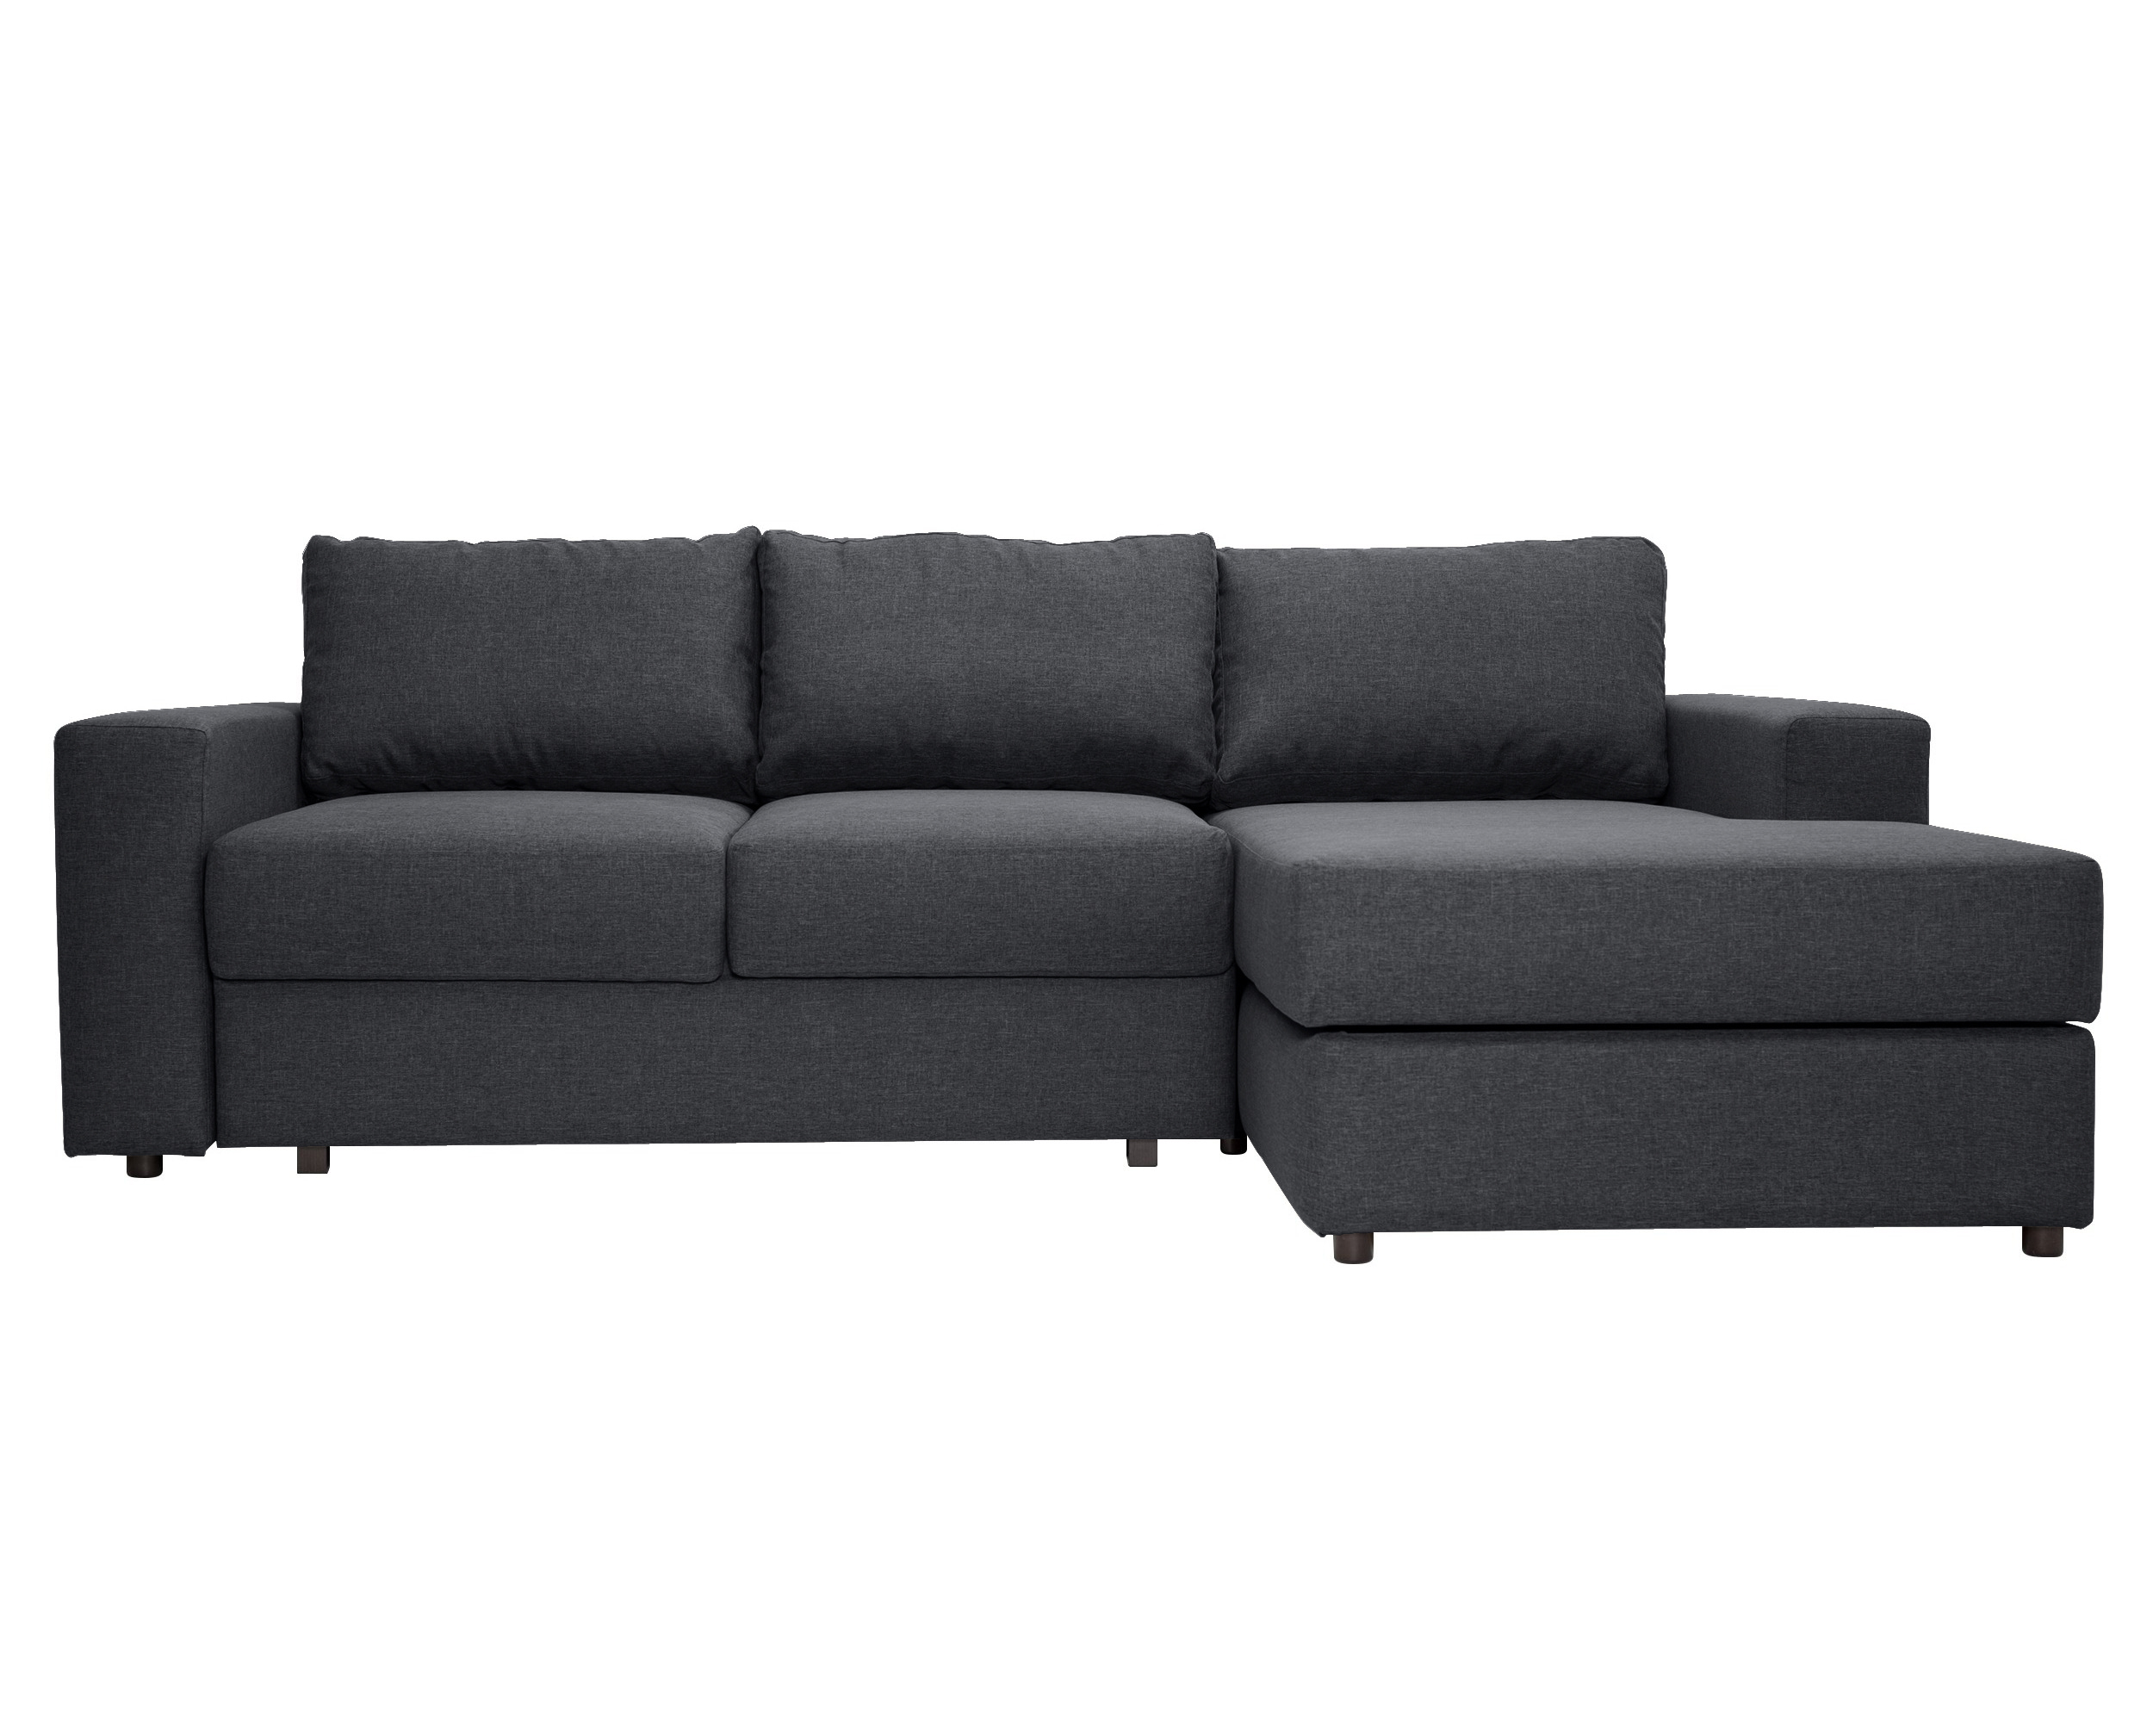  Угловой раскладной диван luma dark (myfurnish) серый 250x79x158 см.